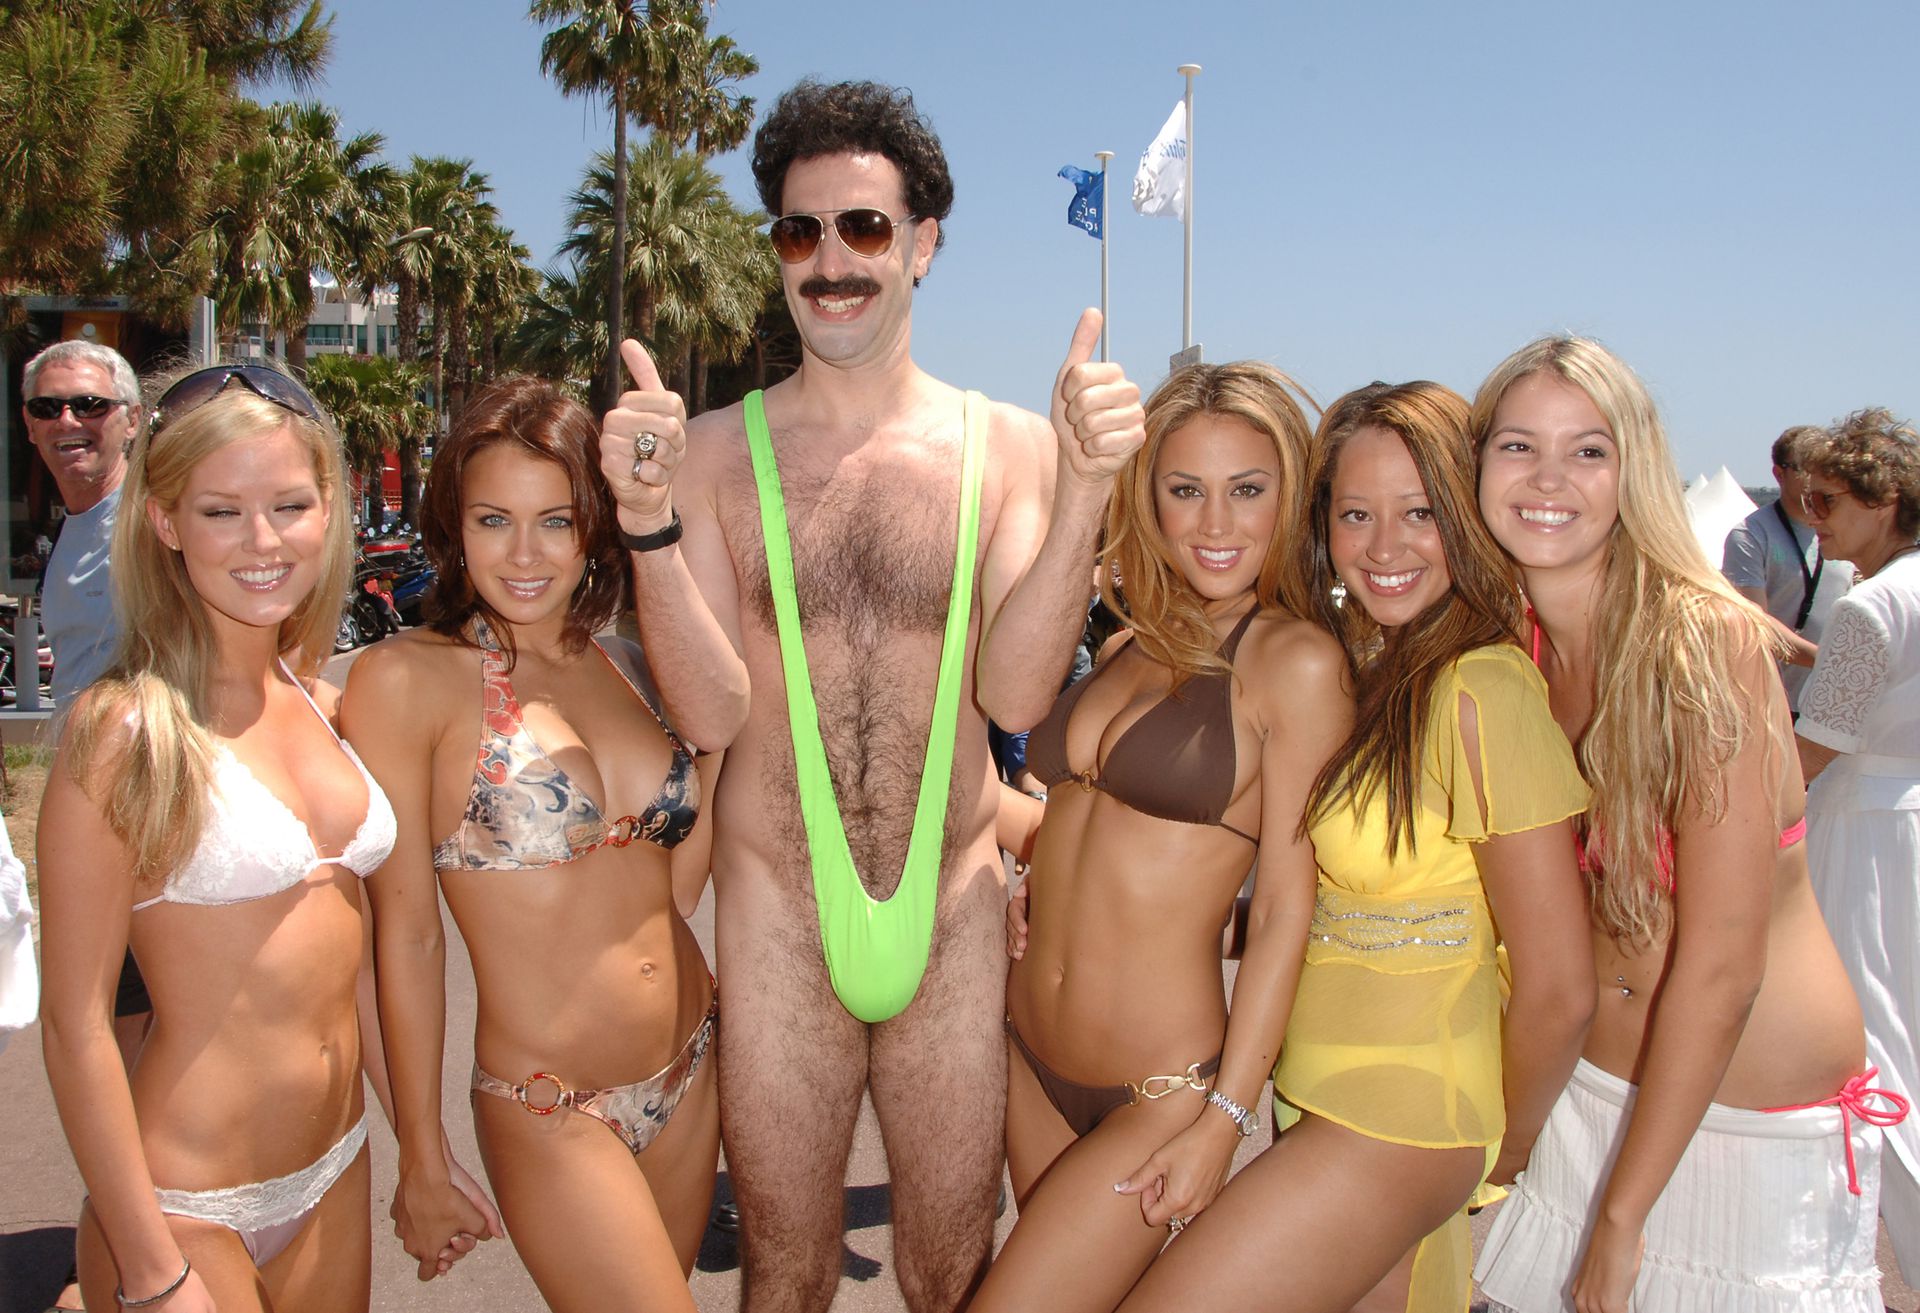 Sacha Baron Cohen, azaz Borat és az ő híres fürdőrucija (Fotó: Getty Images)